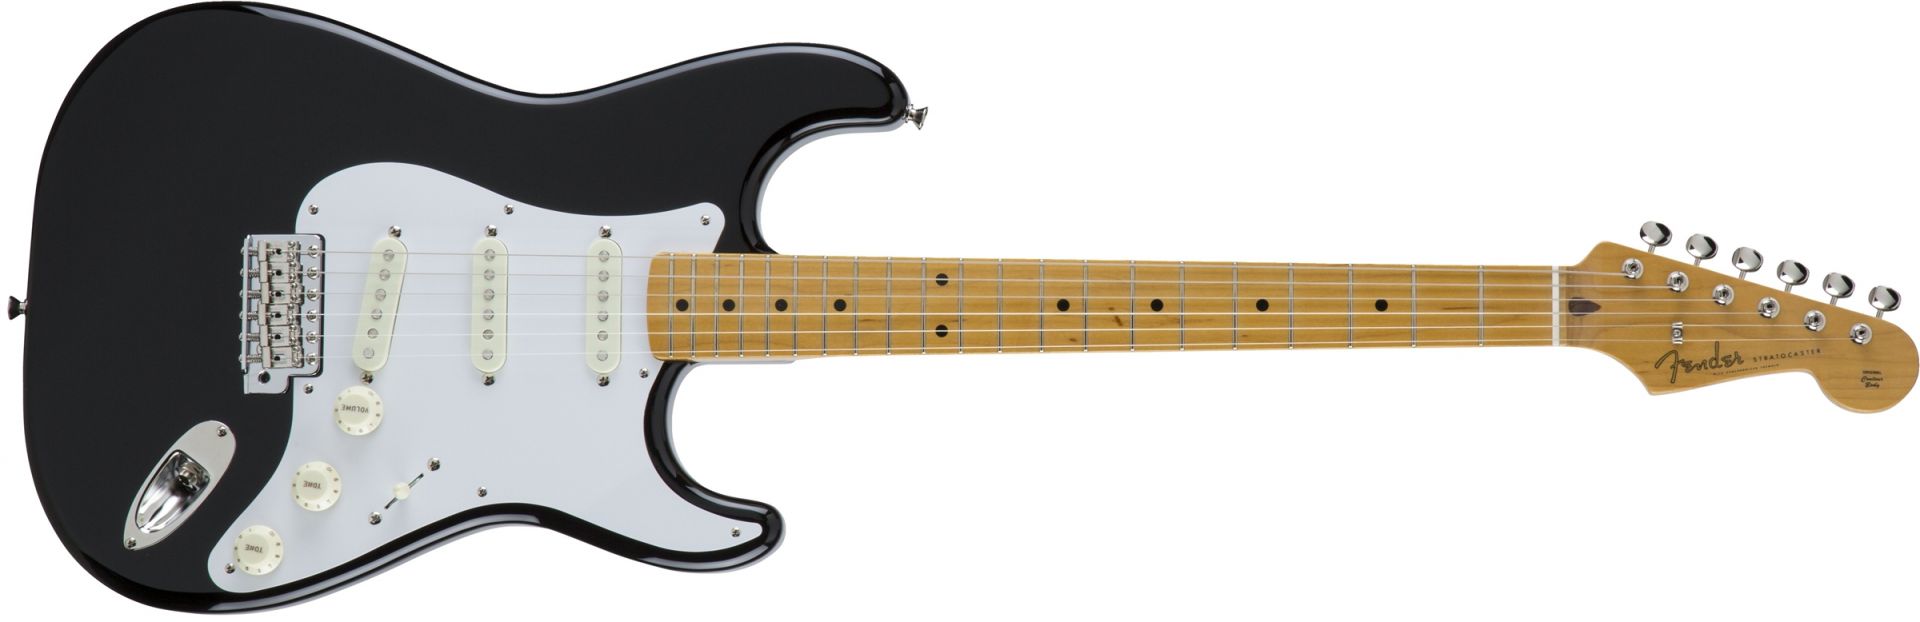 エレキギター】Fender MADE IN JAPAN HYBRIDシリーズ再入荷致しました 